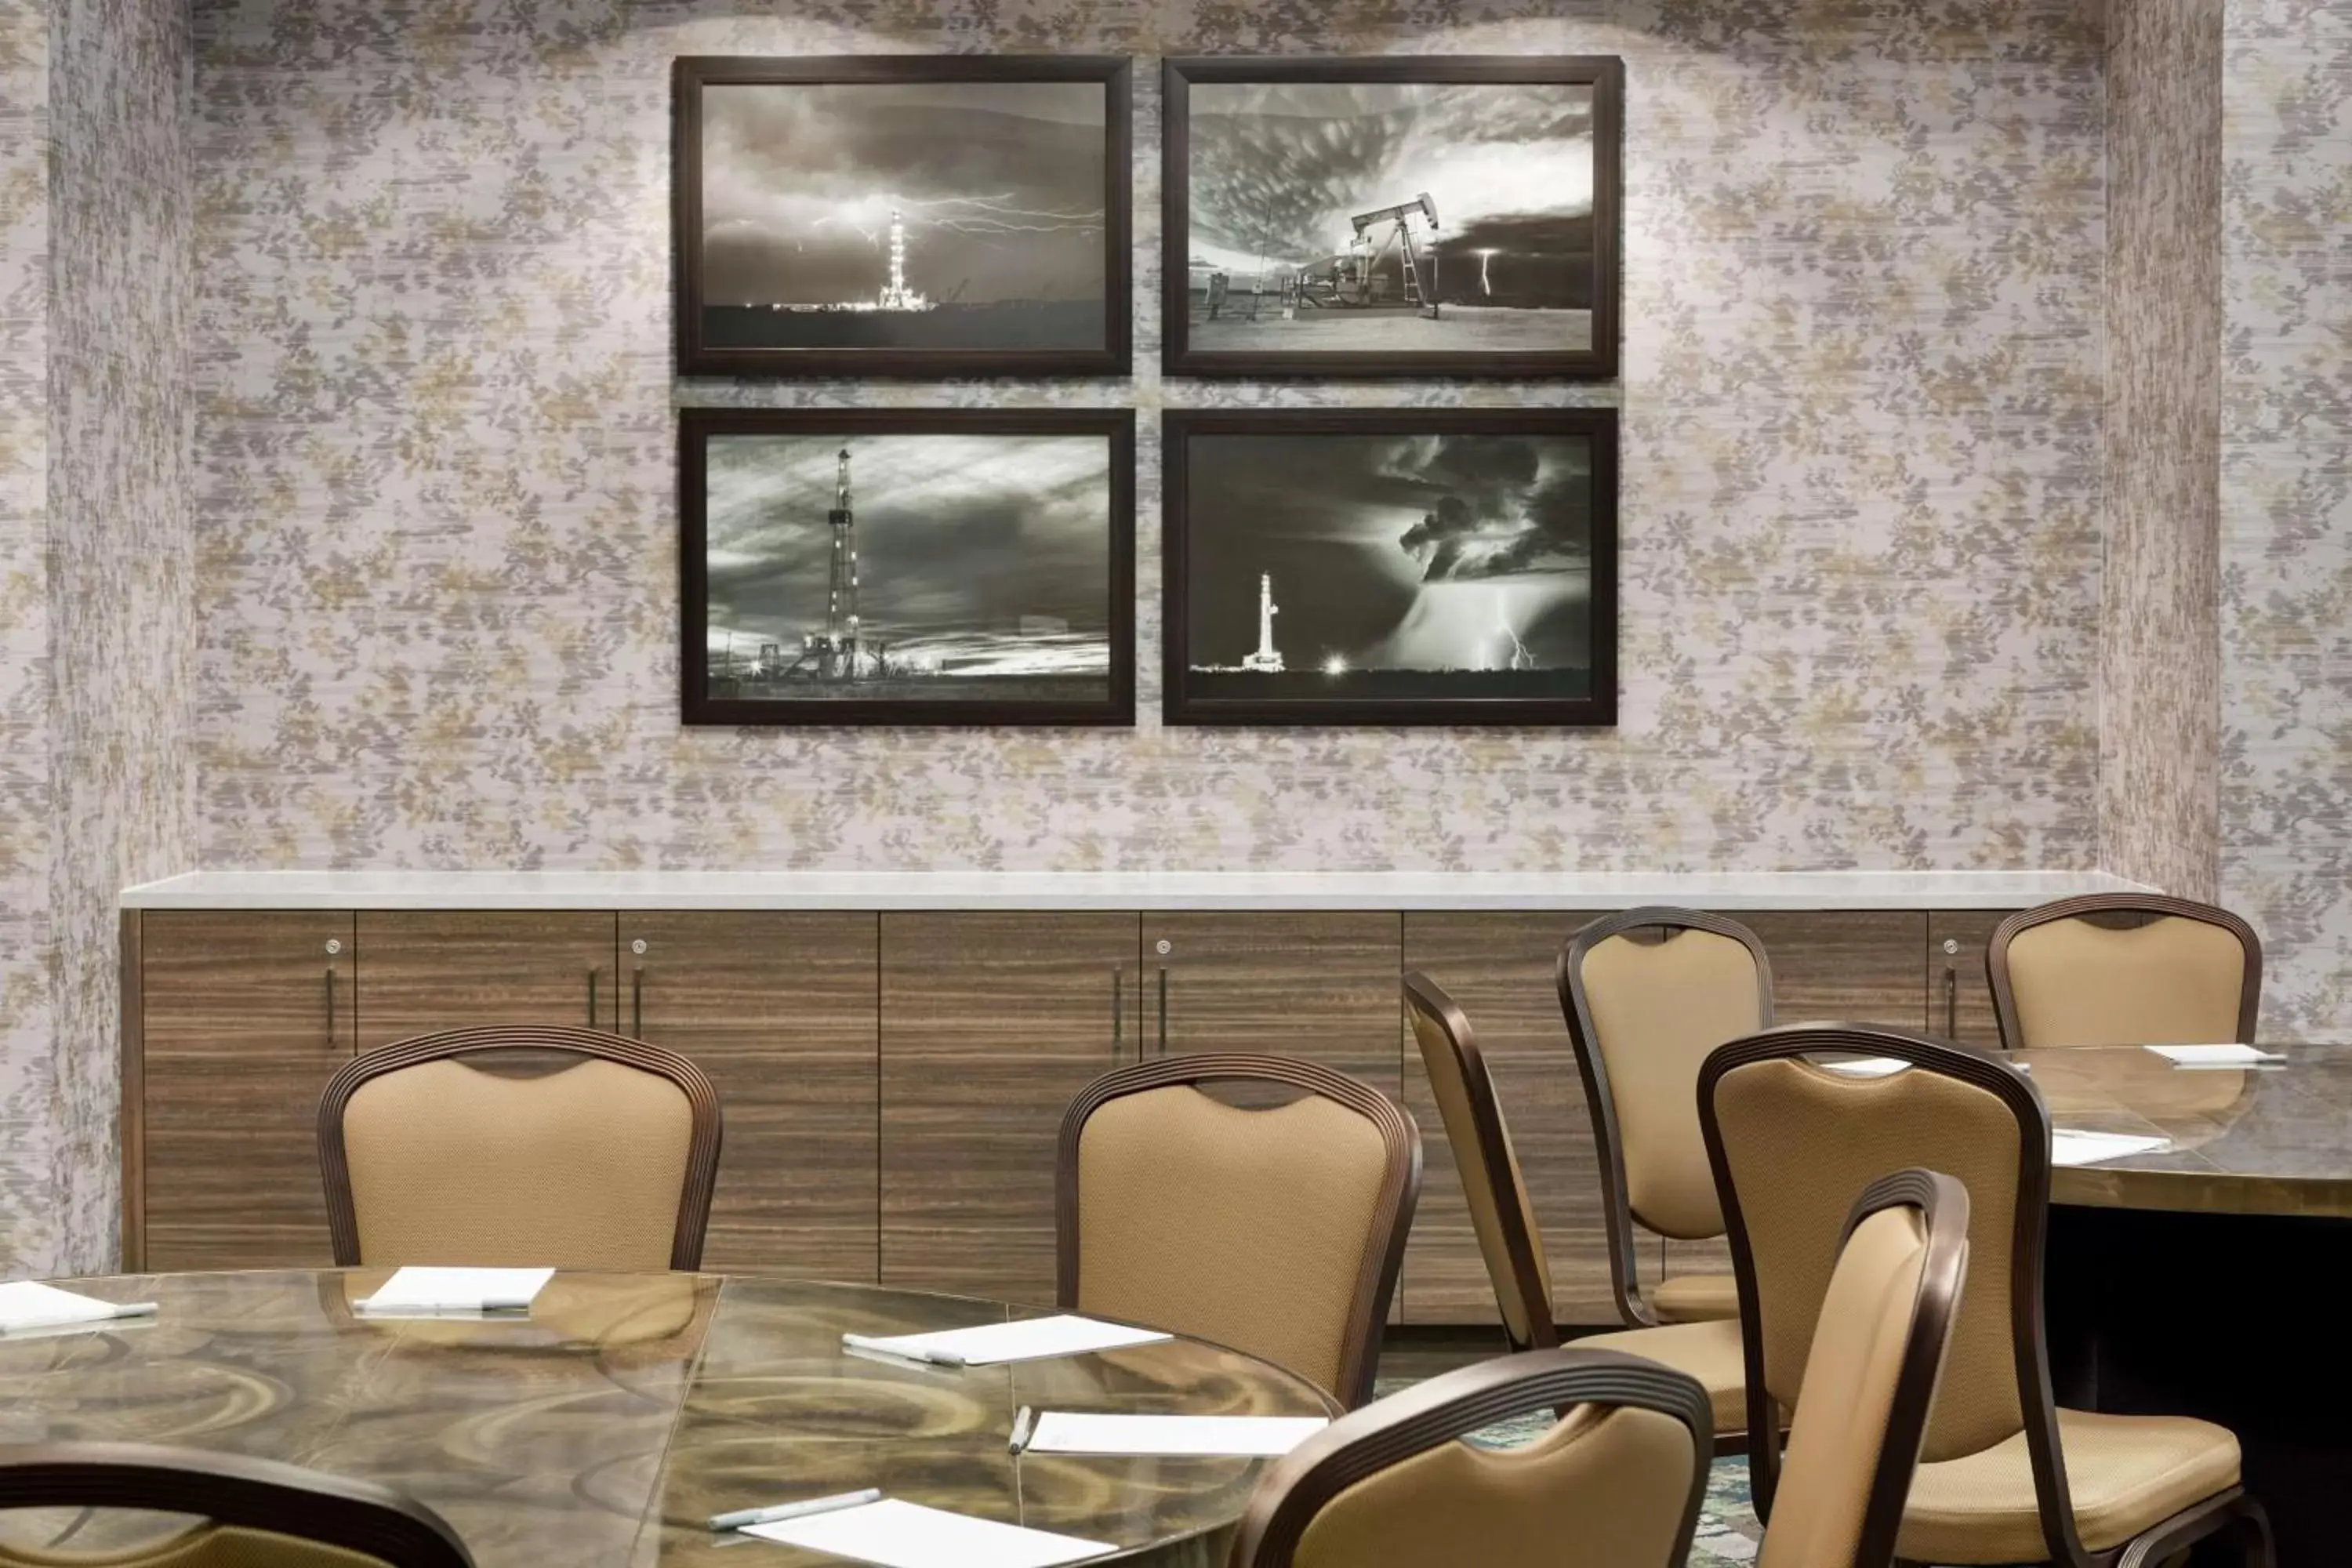 Meeting/conference room in Hilton Garden Inn Houston Energy Corridor